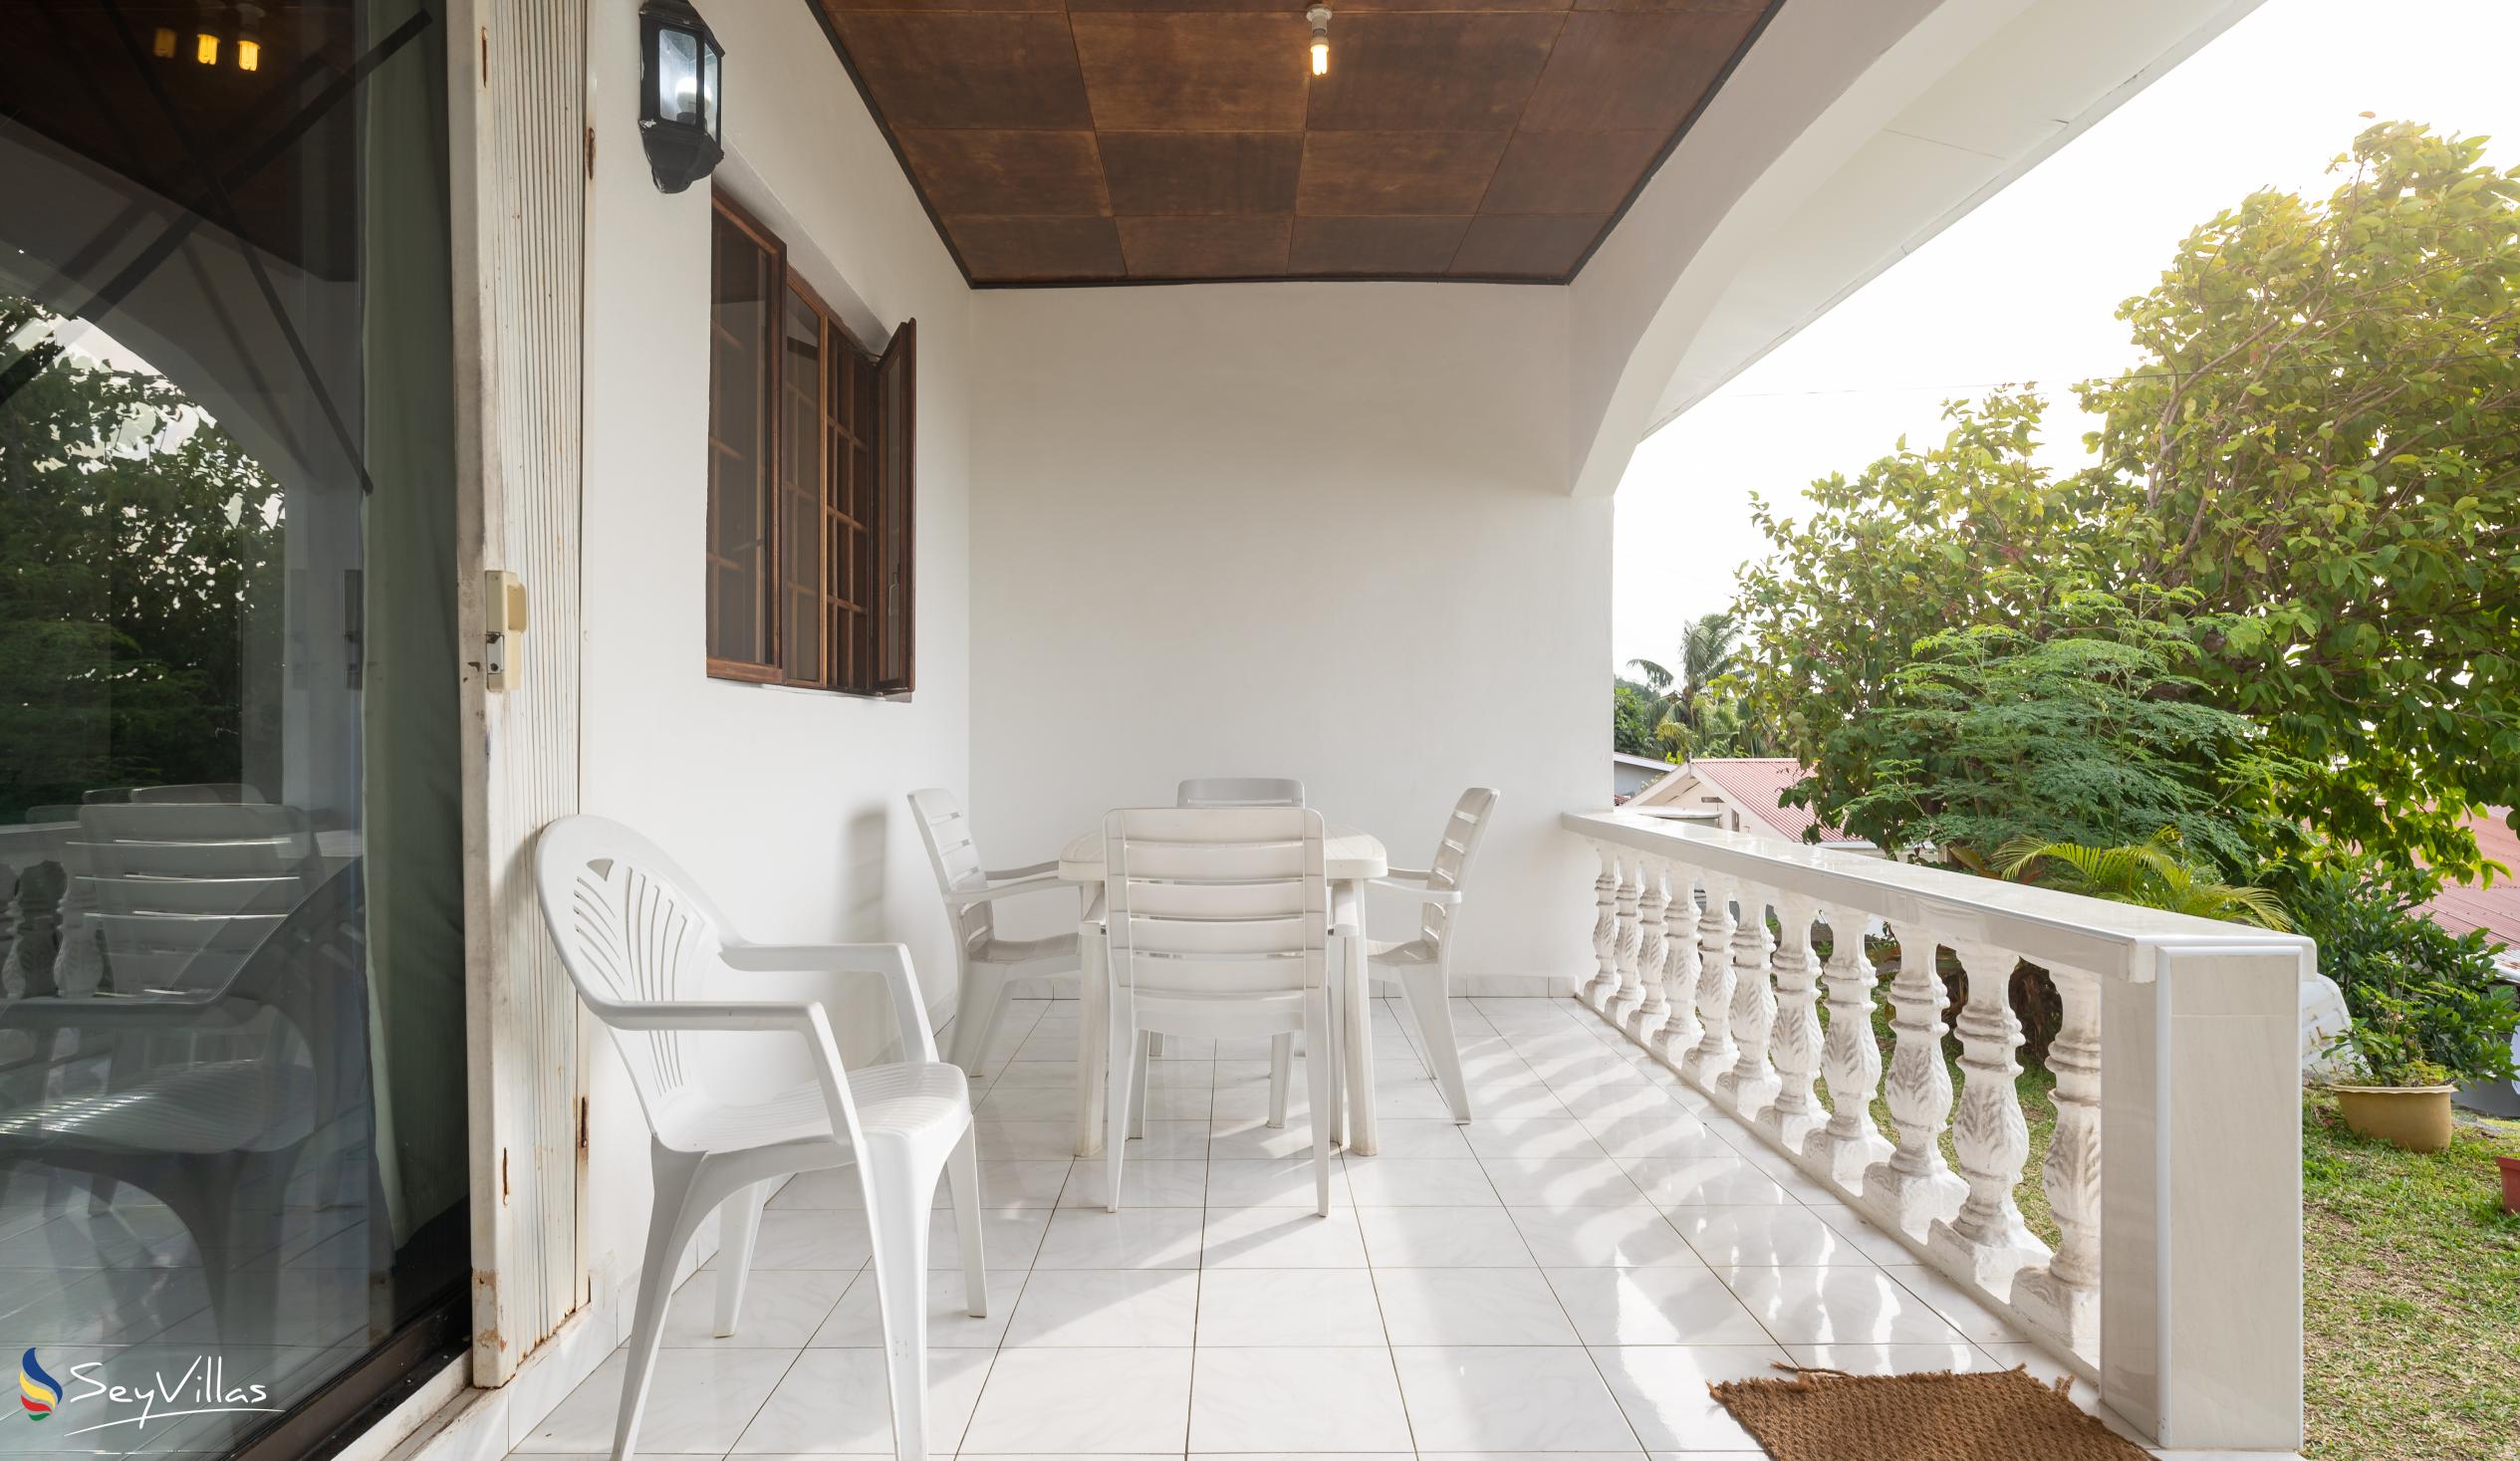 Foto 15: Villa Rousseau - Villa 3 chambres - Mahé (Seychelles)